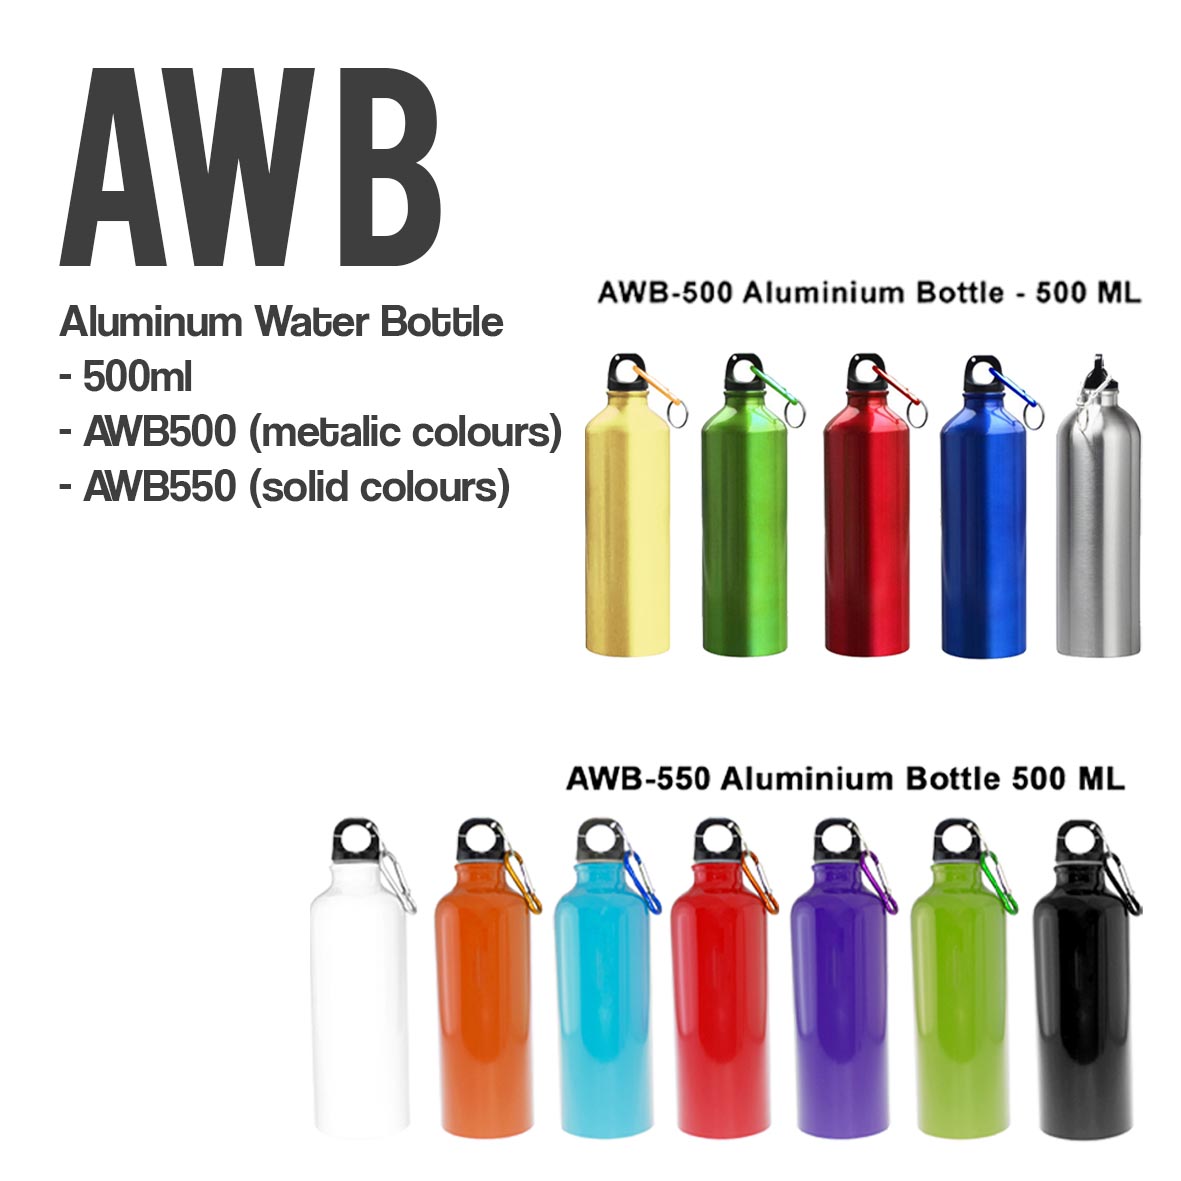 AWB aluminumwater bottle.jpg